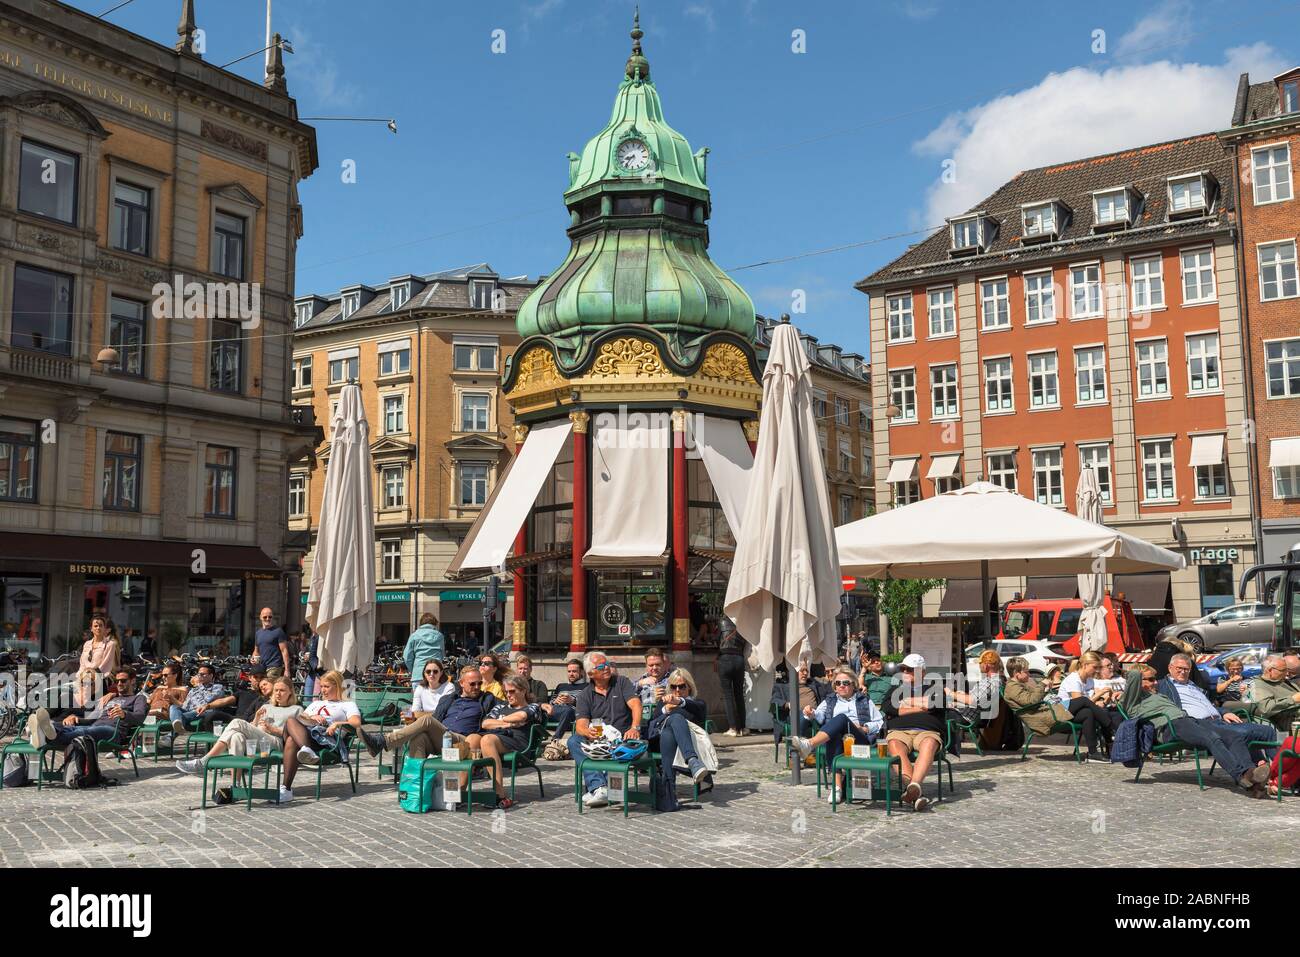 Copenhague, vue à la fin du printemps des personnes se détendant dans un café terrasse situé sur la place Kongens Nytorv dans le centre de Copenhague, Danemark. Banque D'Images